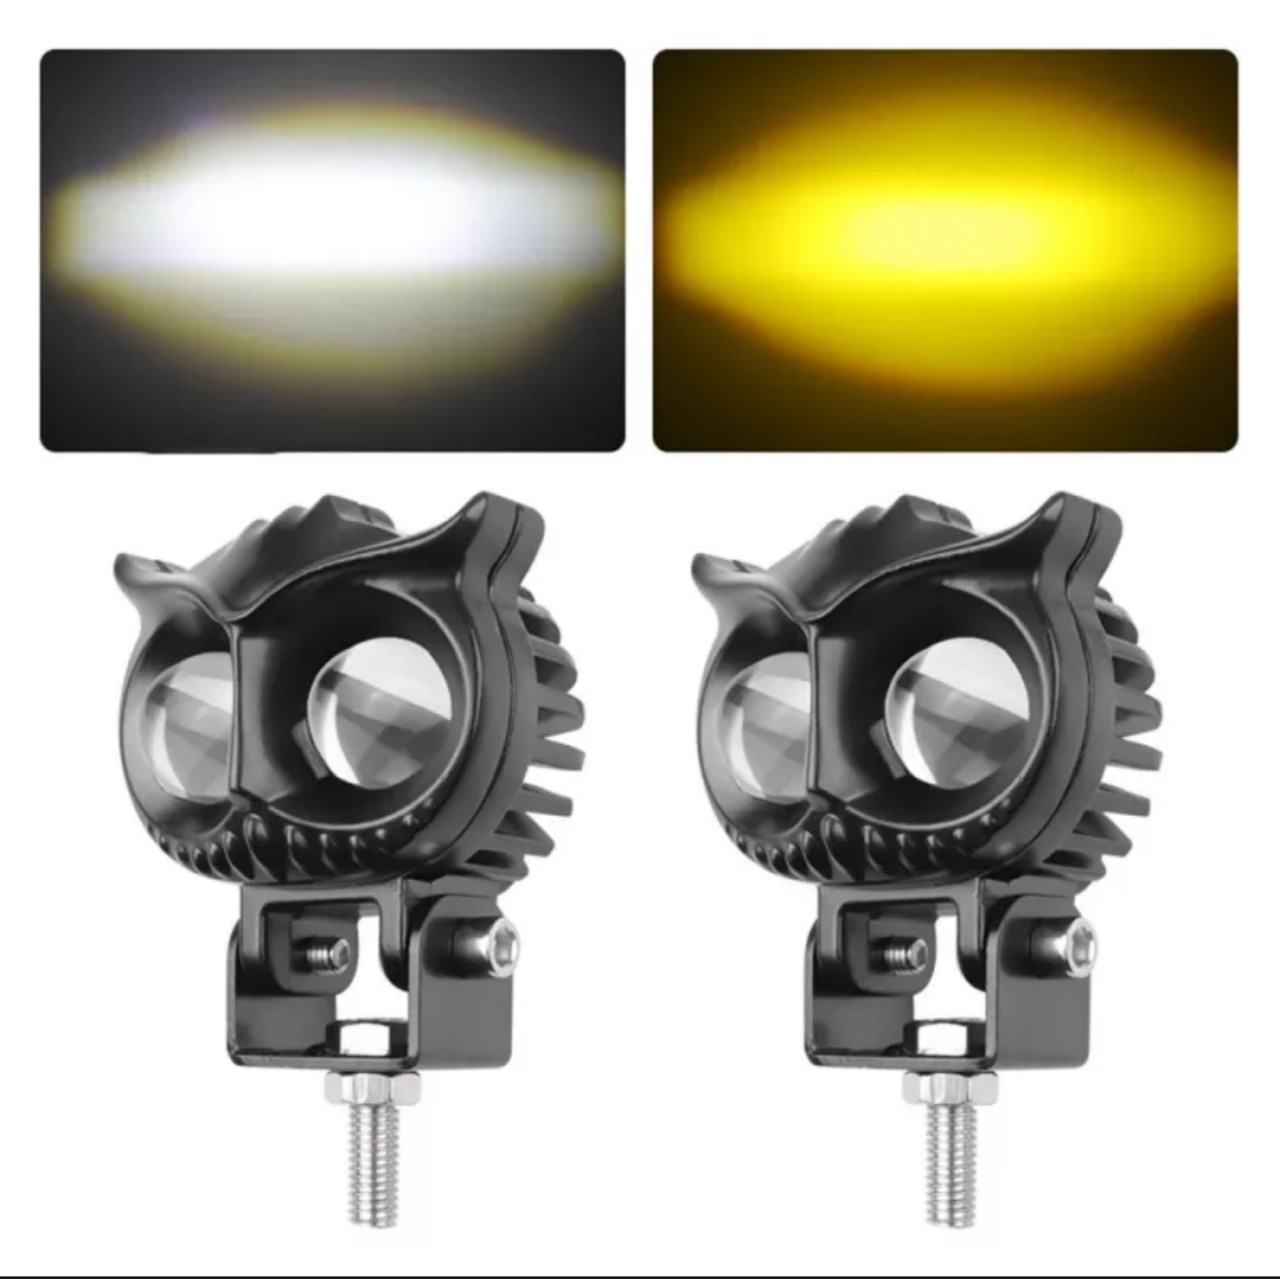 Đèn trợ sáng bi cầu X22 Pro mắt cú 45W 2 led chế độ cốt vàng pha trắng hàng cao câp dành cho khách víp mẫu mới